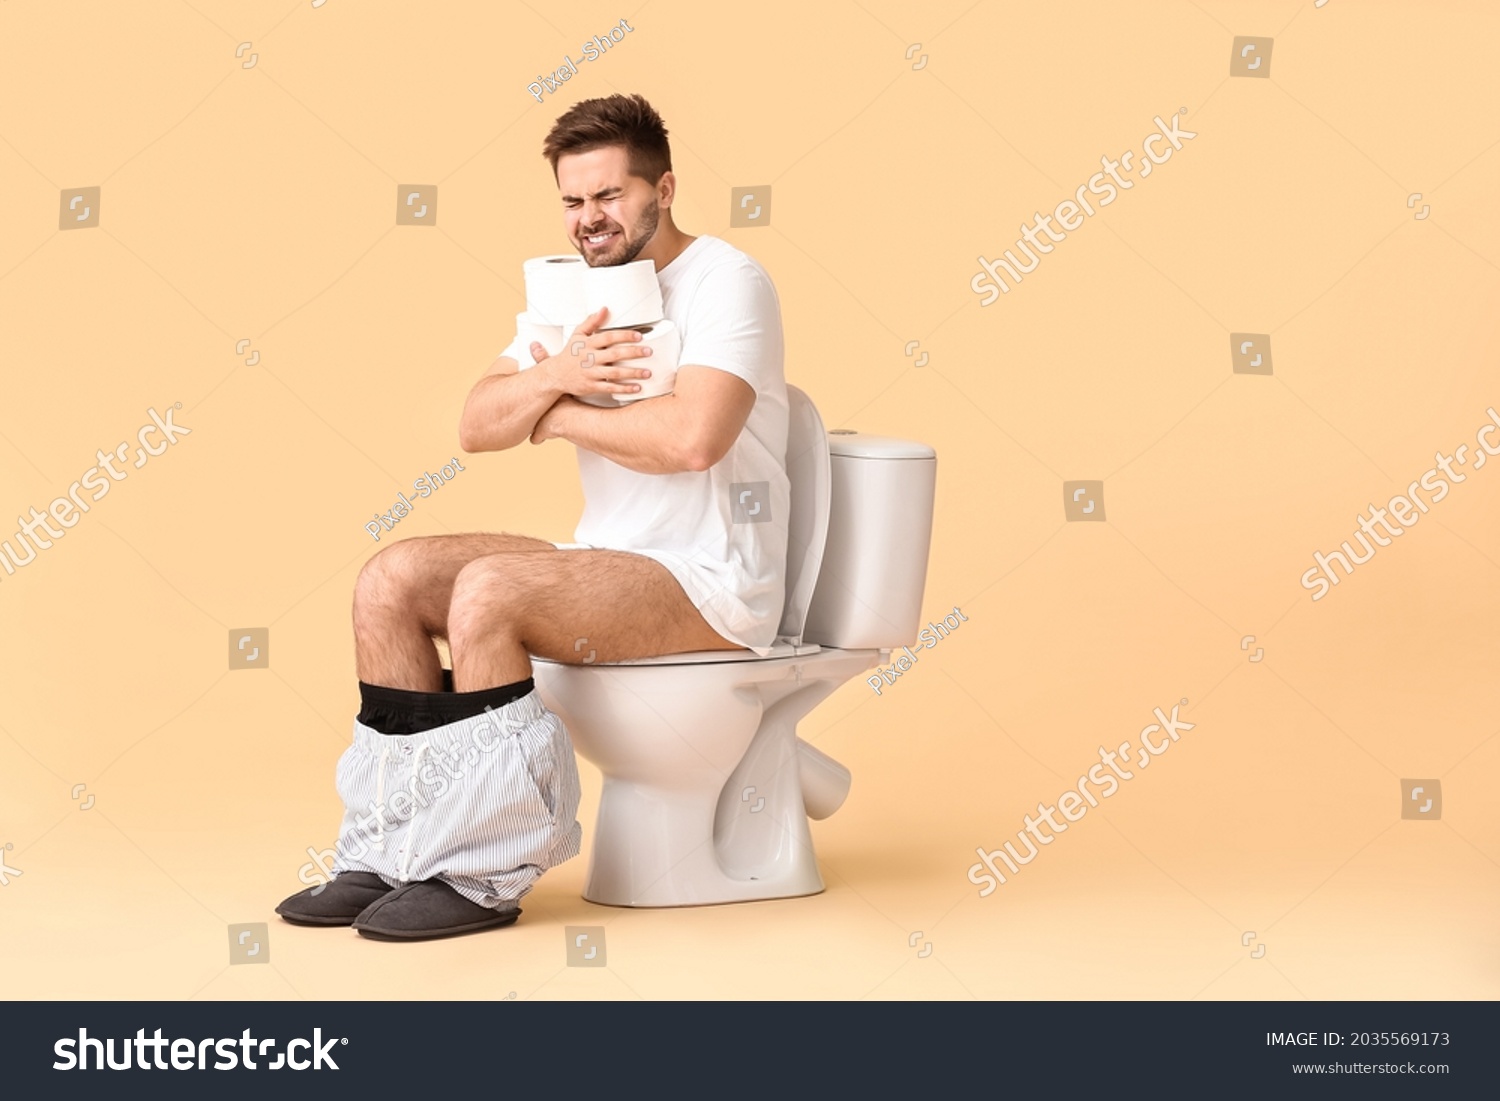 Мужчина сидит в туалете. Мужчина в туалете.